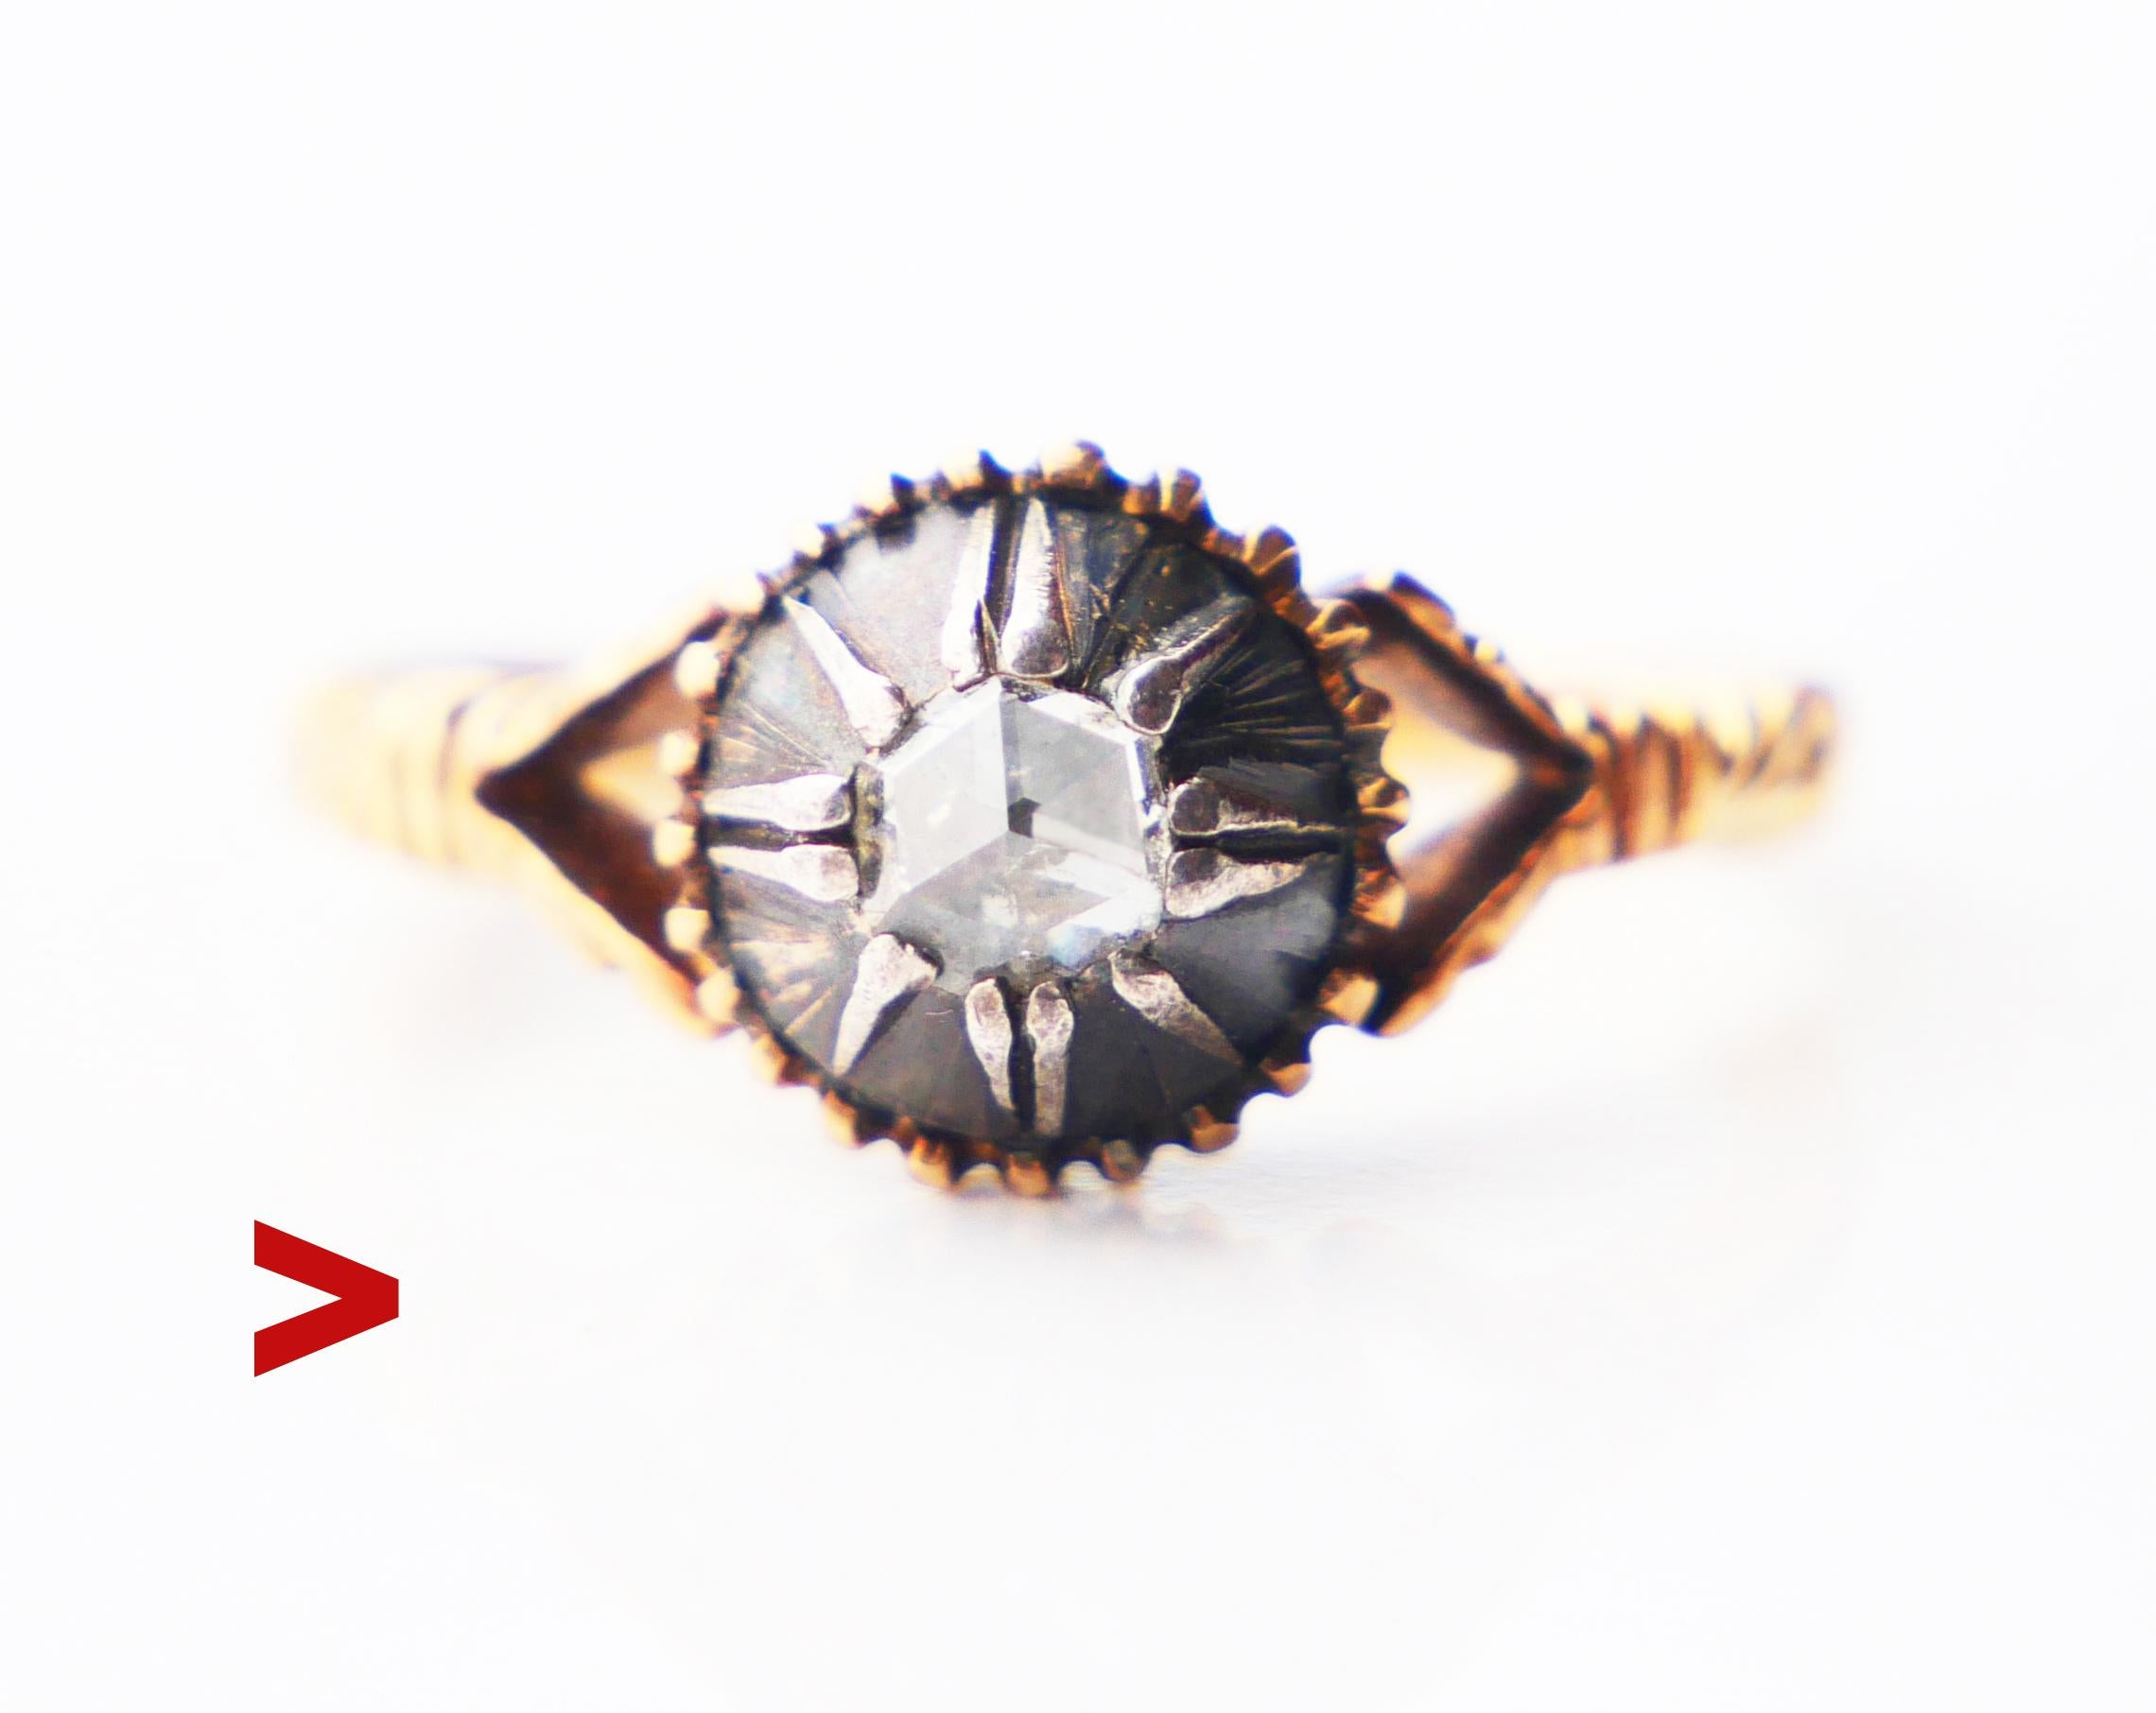 Bei diesem Ring im Renaissance-Stil handelt es sich um eine Kombination aus Gold, Silber und einem Diamanten mit einer Art Übergangsschliff, der auf seinen dreieckigen Facetten viele glänzende Reflexe erzeugt. Der Diamant ist weiß, misst Ø 4 mm /